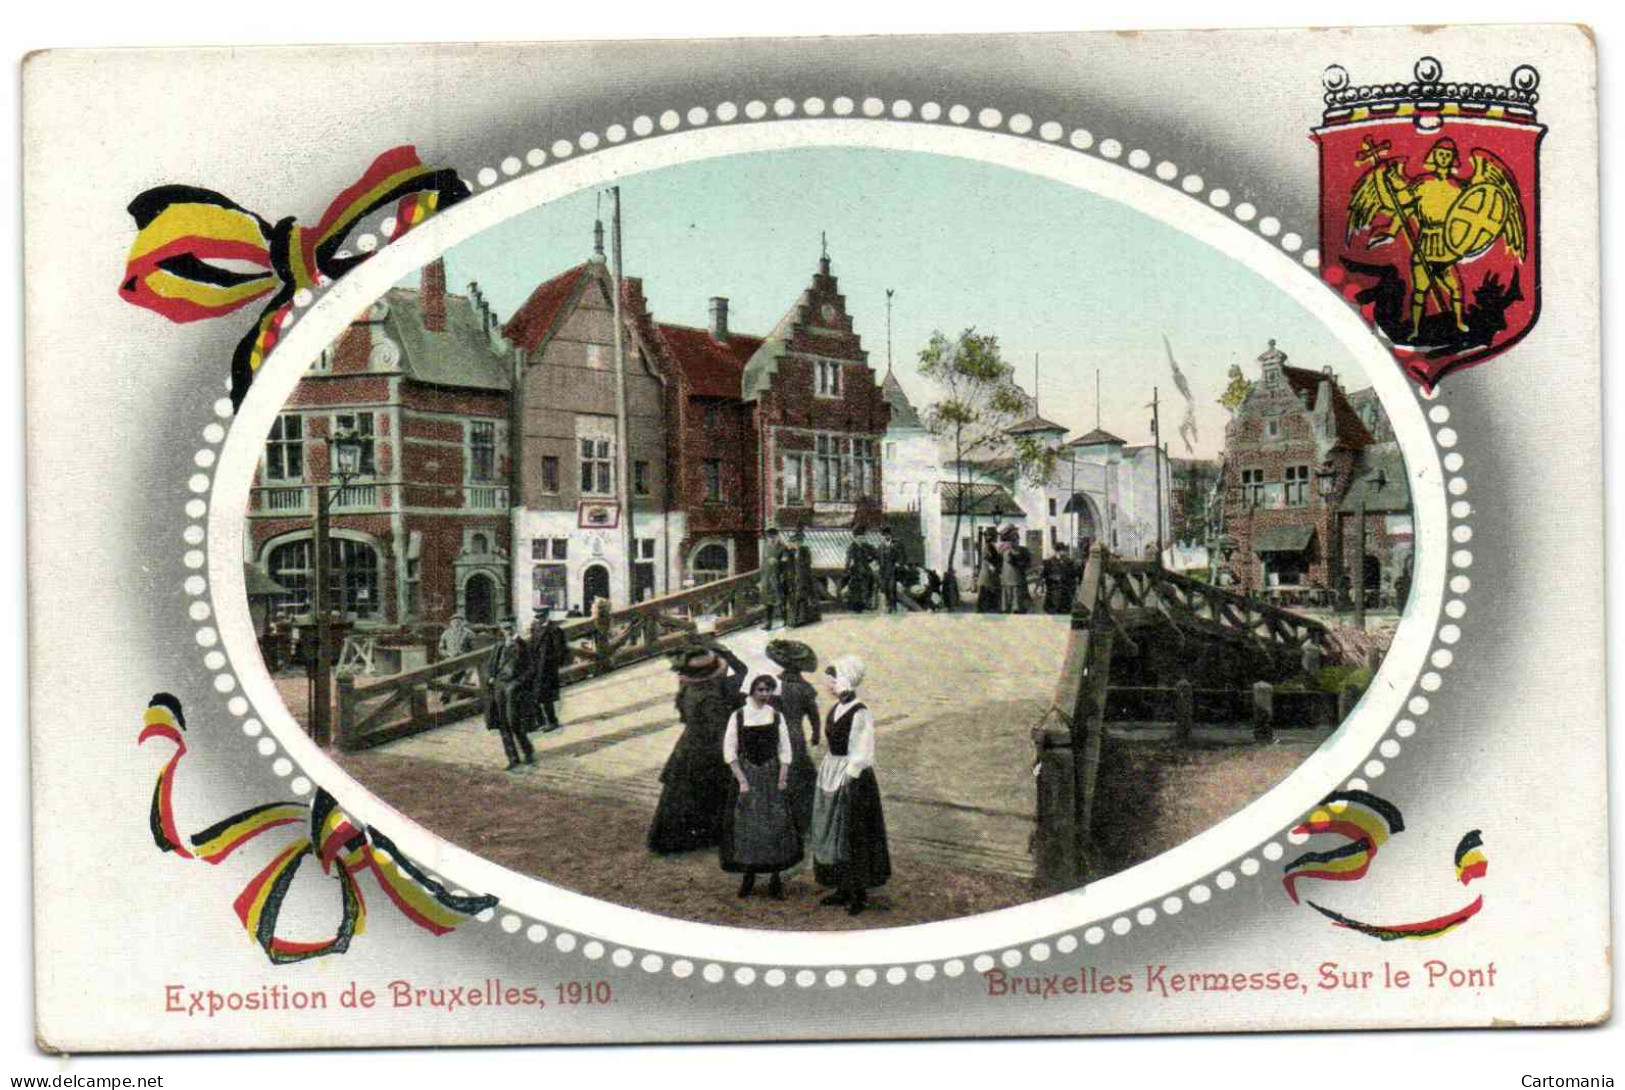 Exposition De Bruxelles 1910 - Bruxelles Kermesse - Sur Le Pont - Wereldtentoonstellingen